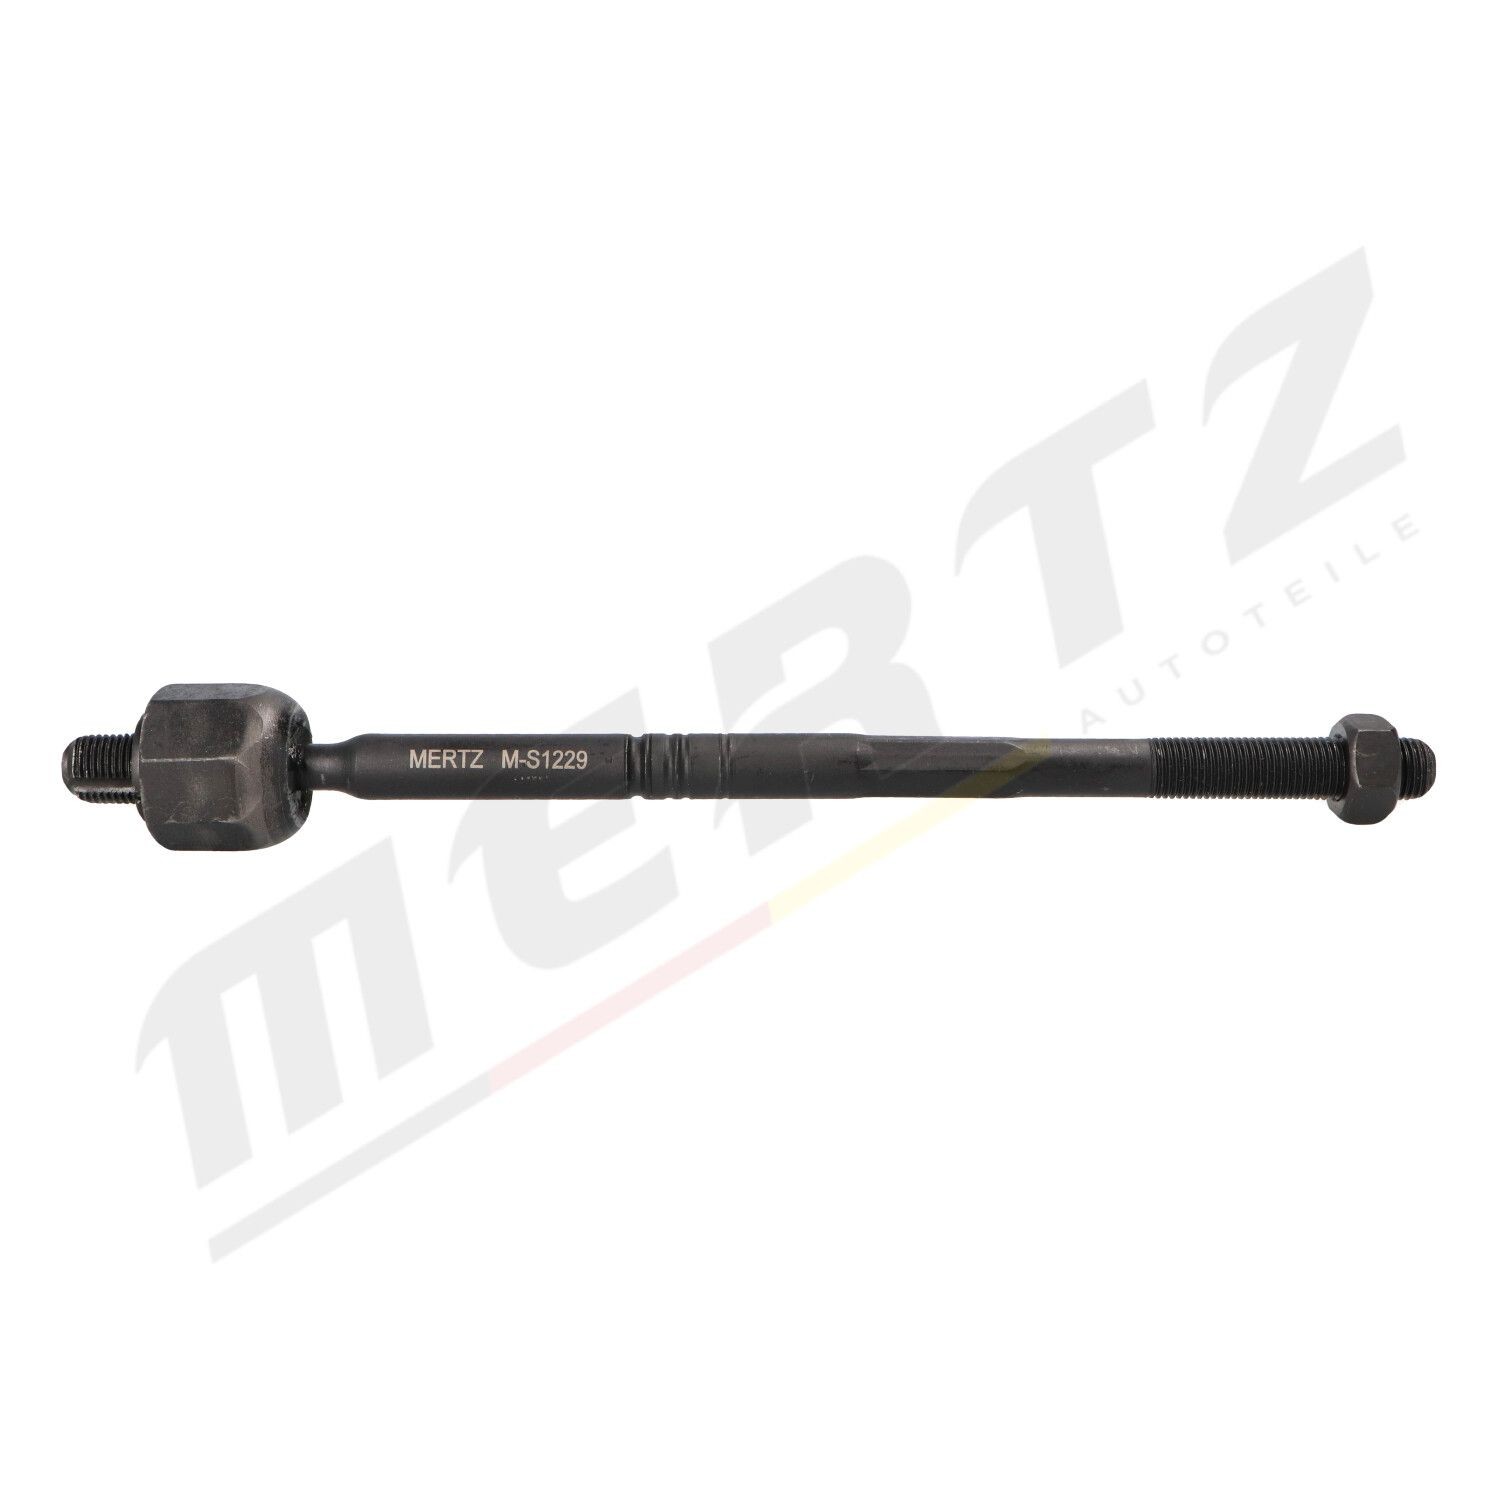 MERTZ M-S1229 OPEL ASTRA 2006 Inner track rod